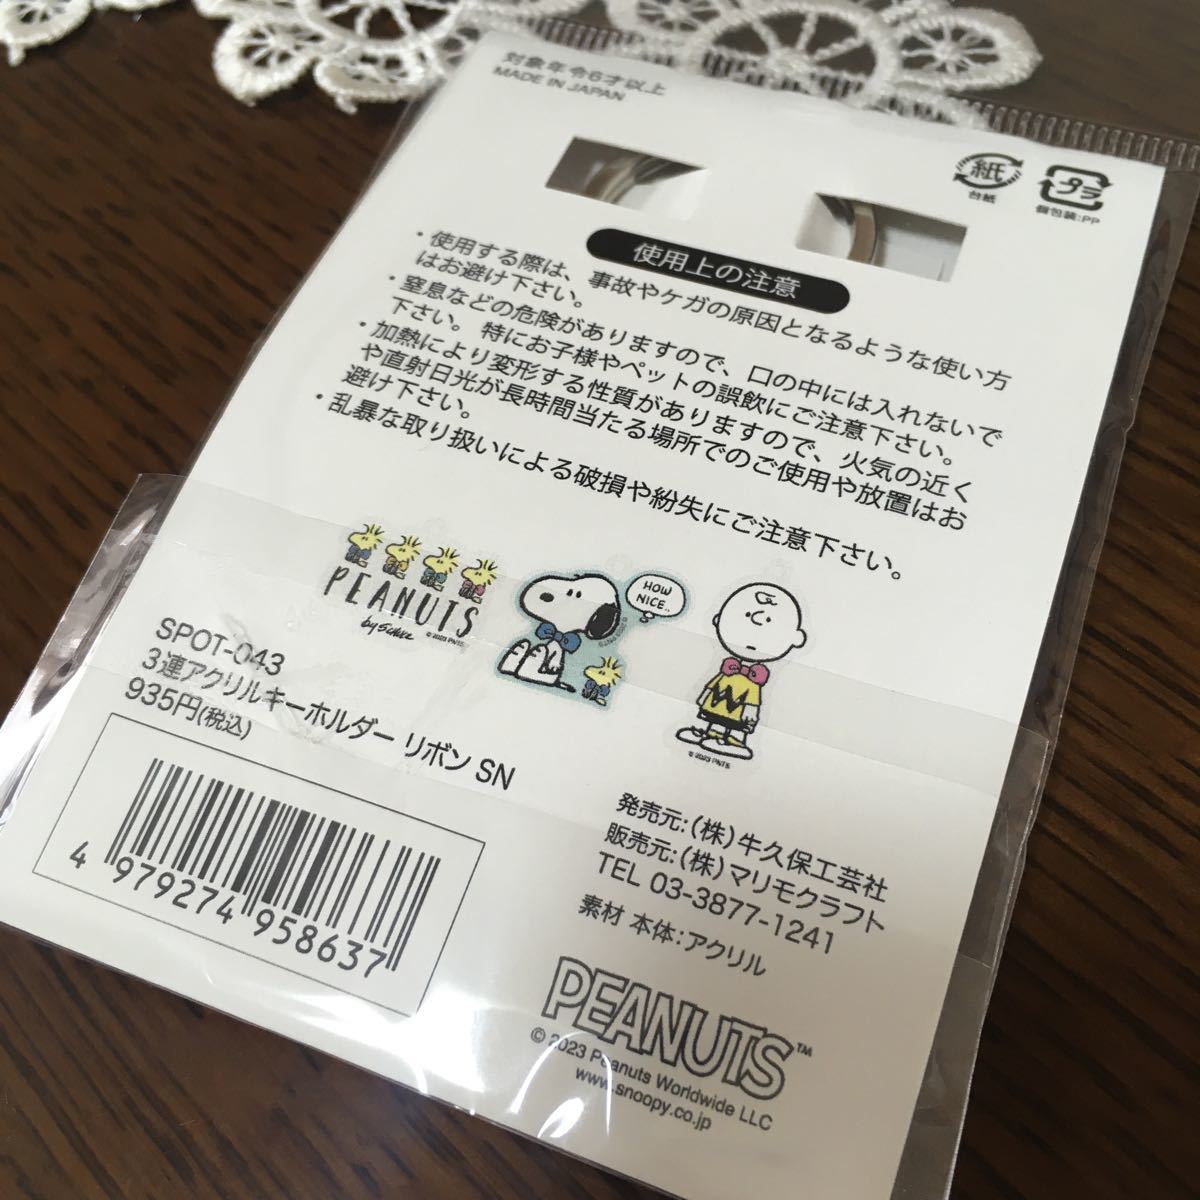  Snoopy 3 полосный акрил брелок для ключа брелок для ключа ключ стоимость доставки 120 новый товар сделано в Японии Charlie Brown Woodstock 